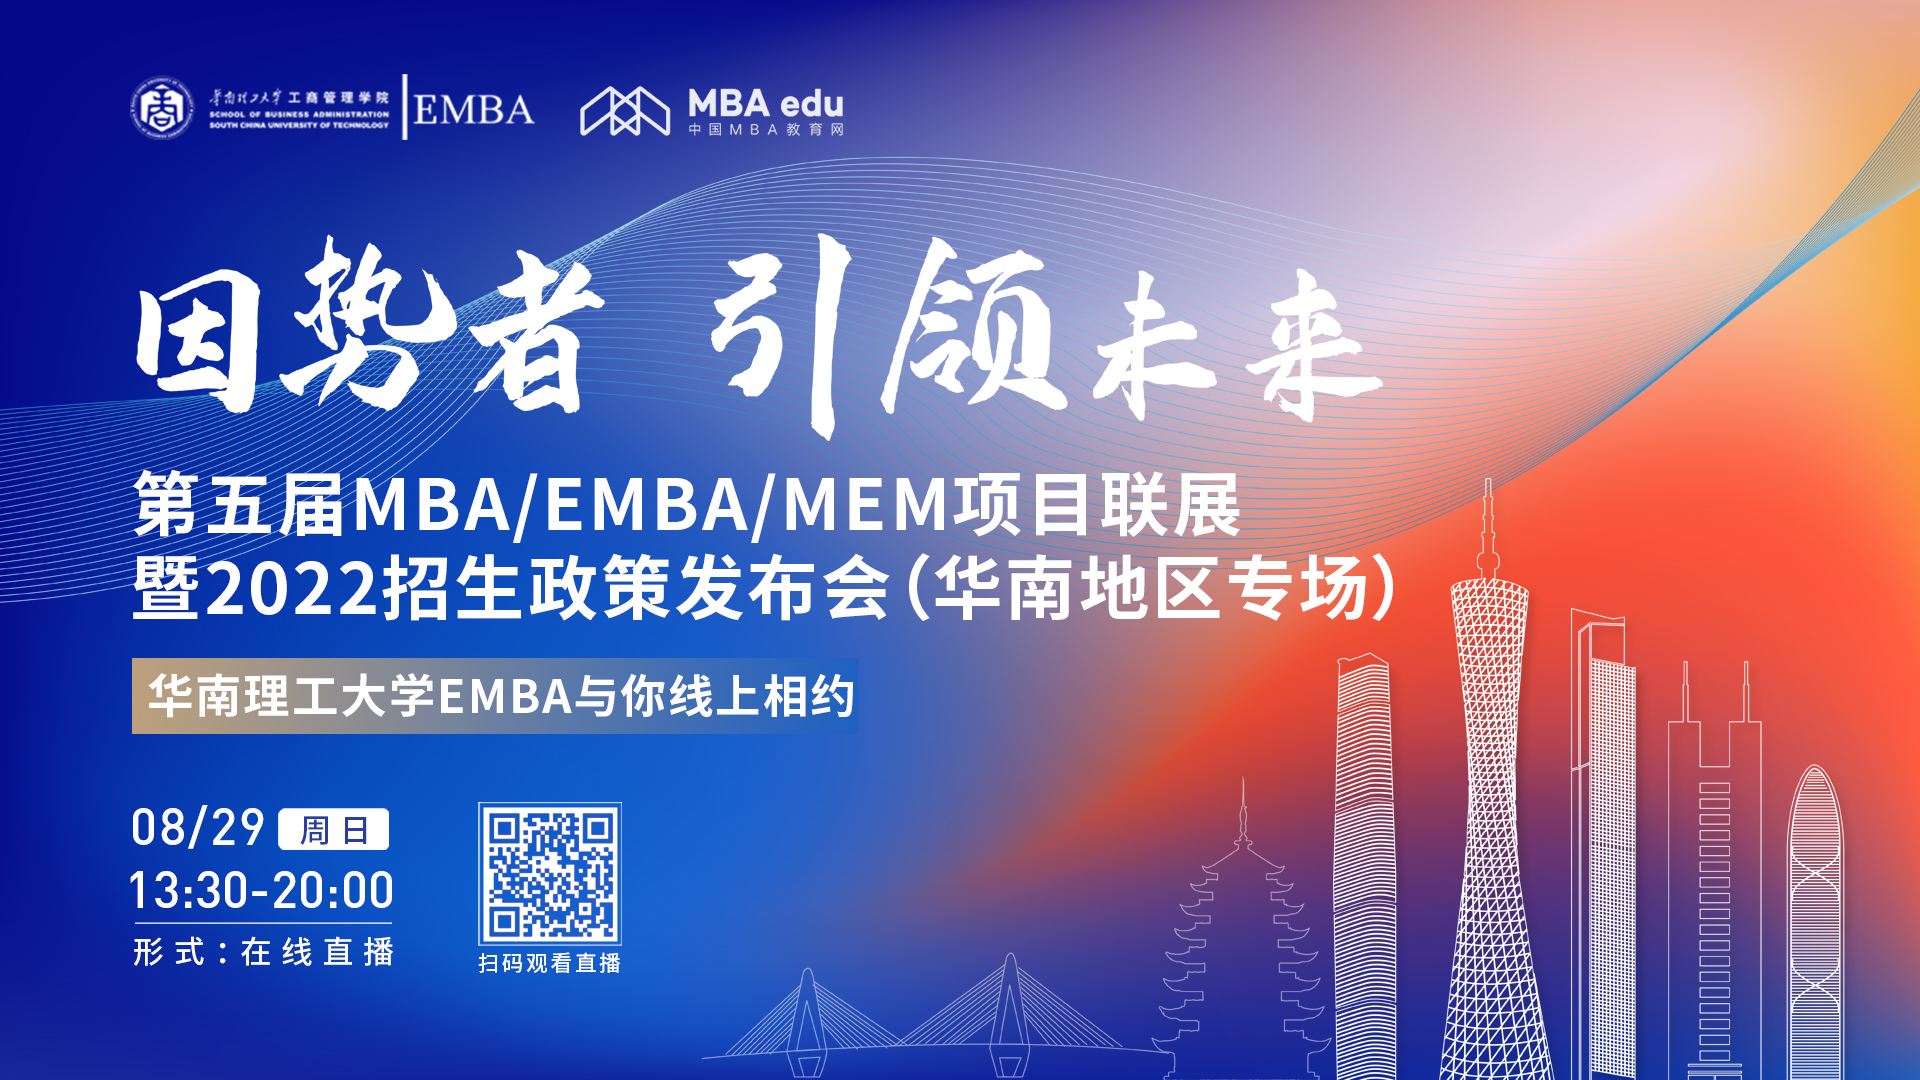 【8.29】华南理工大学EMBA邀您在线收看第五届MBA/EMBA/MEM项目联展暨2022招生政策发布会（华南地区专场）